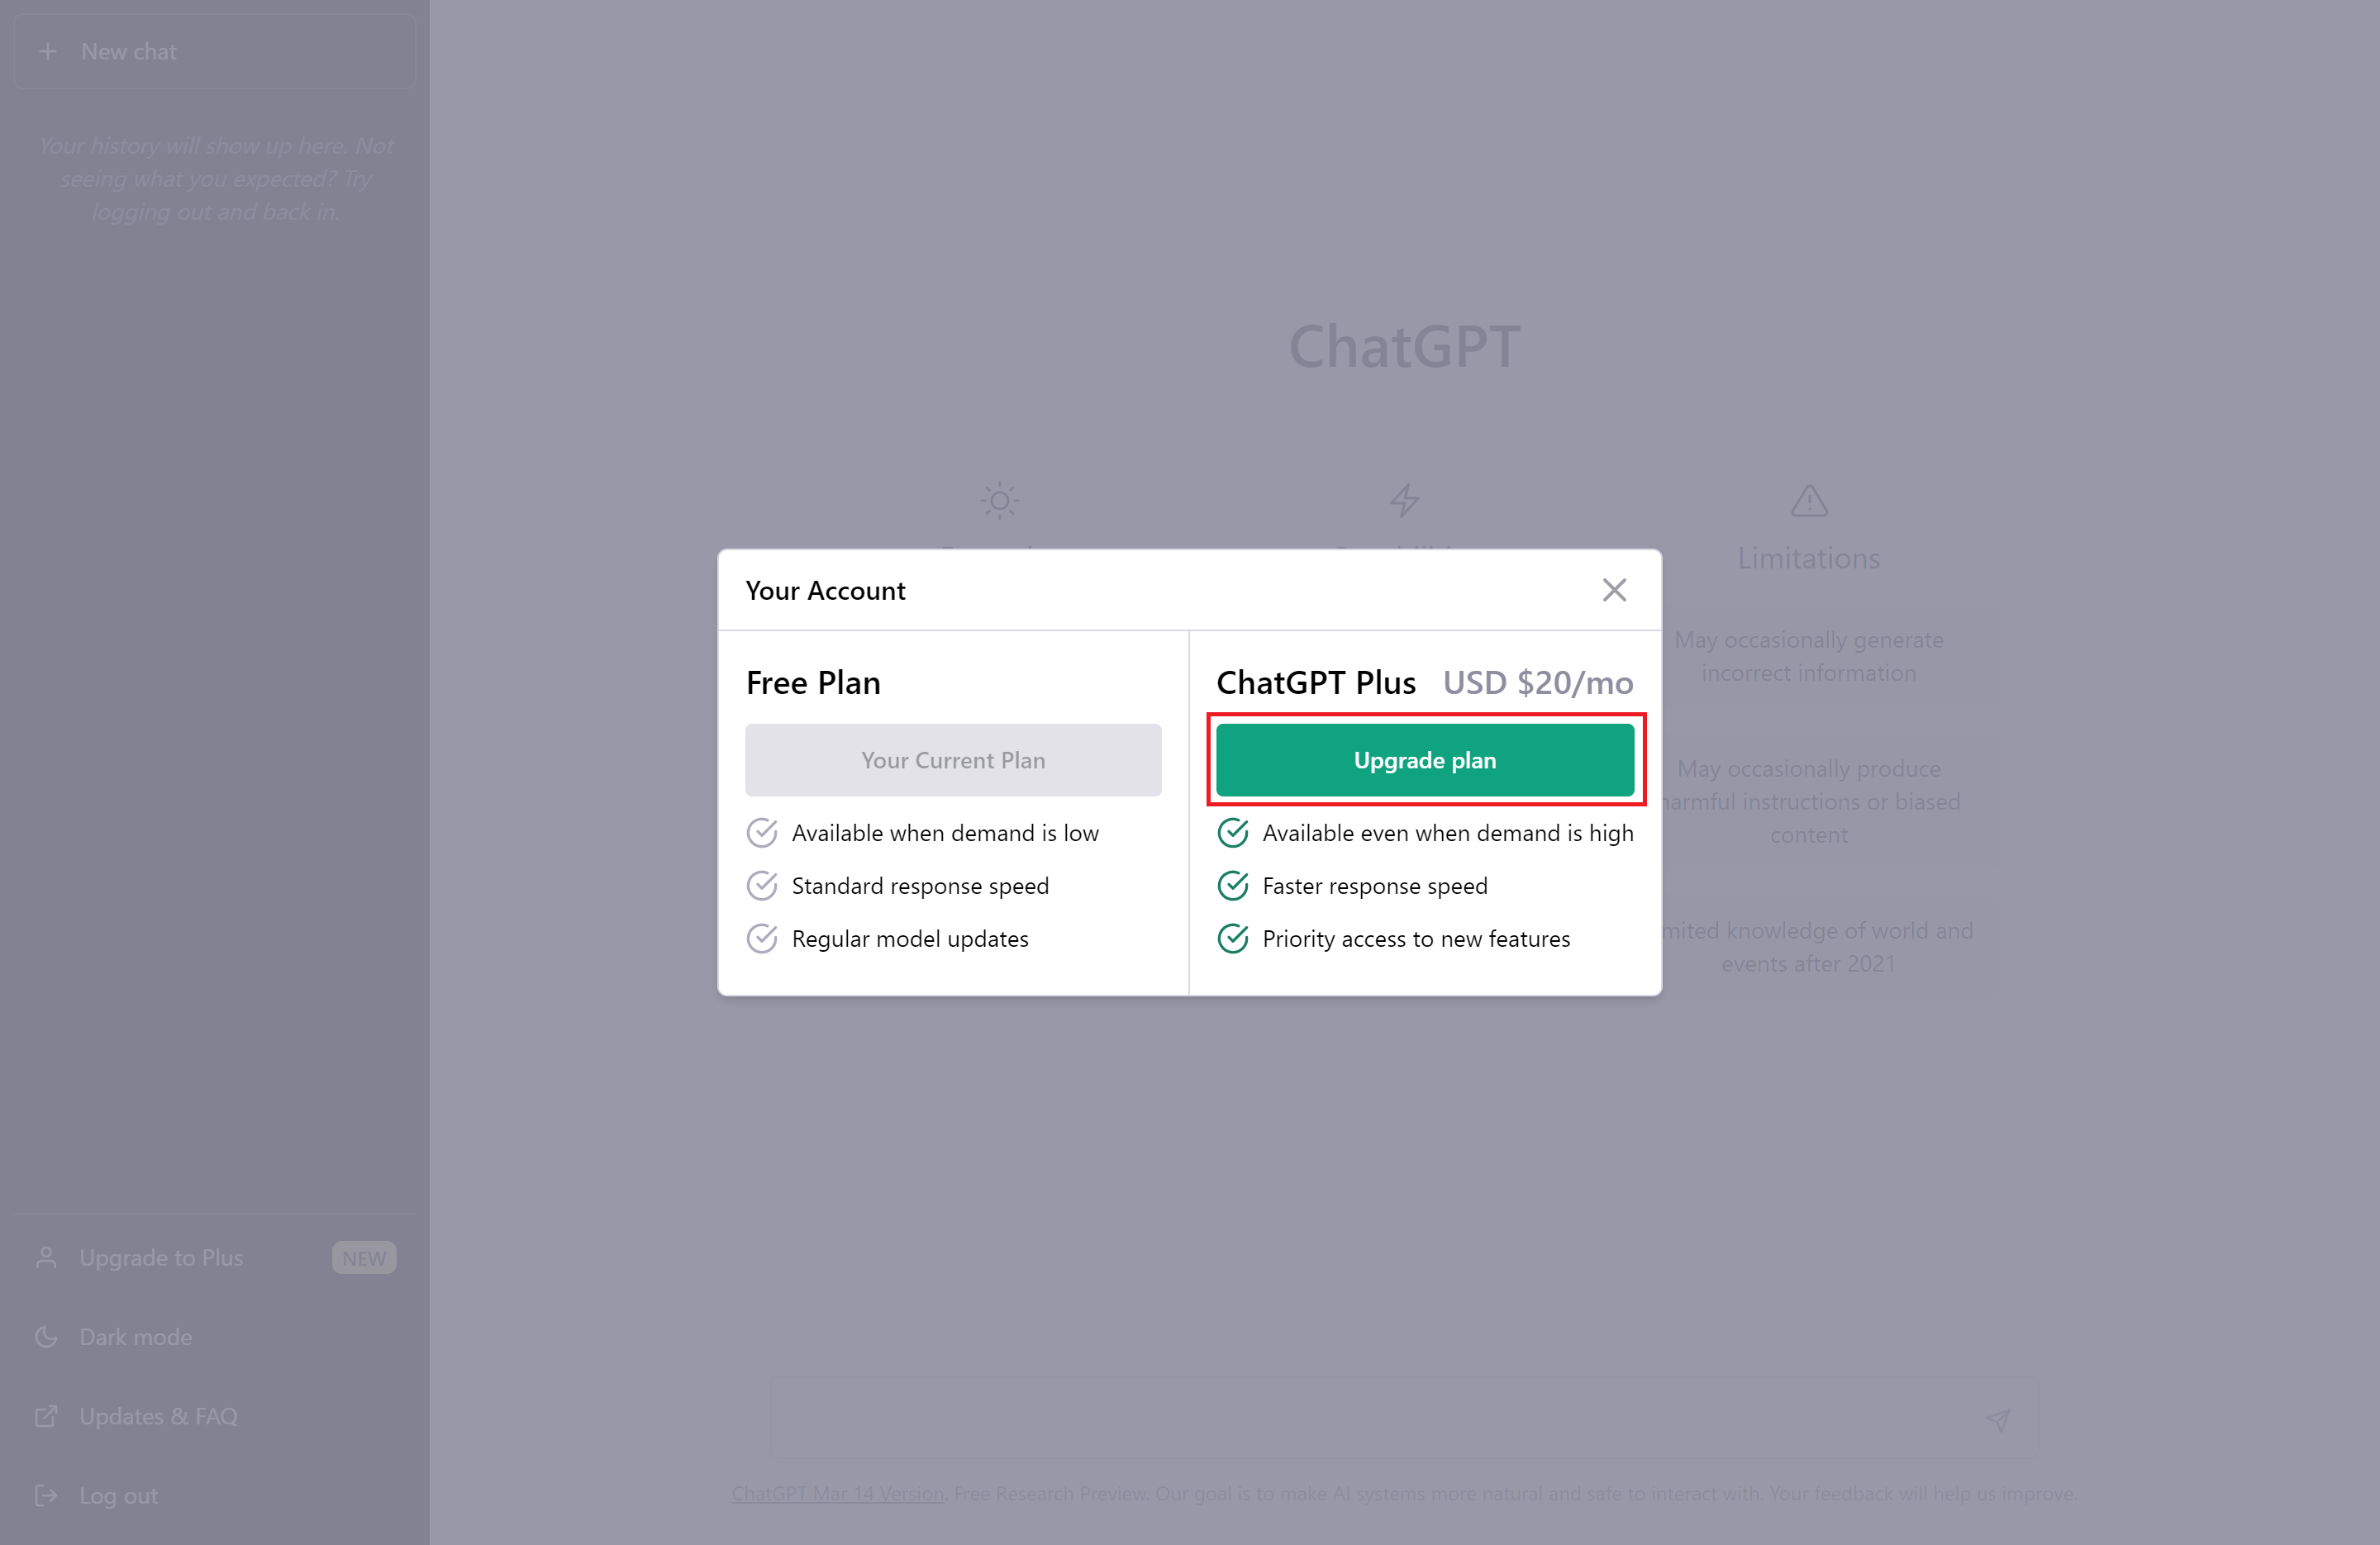 Upgrade to Plusクリック後の画面、ChatGPT Plusの機能が記載されている